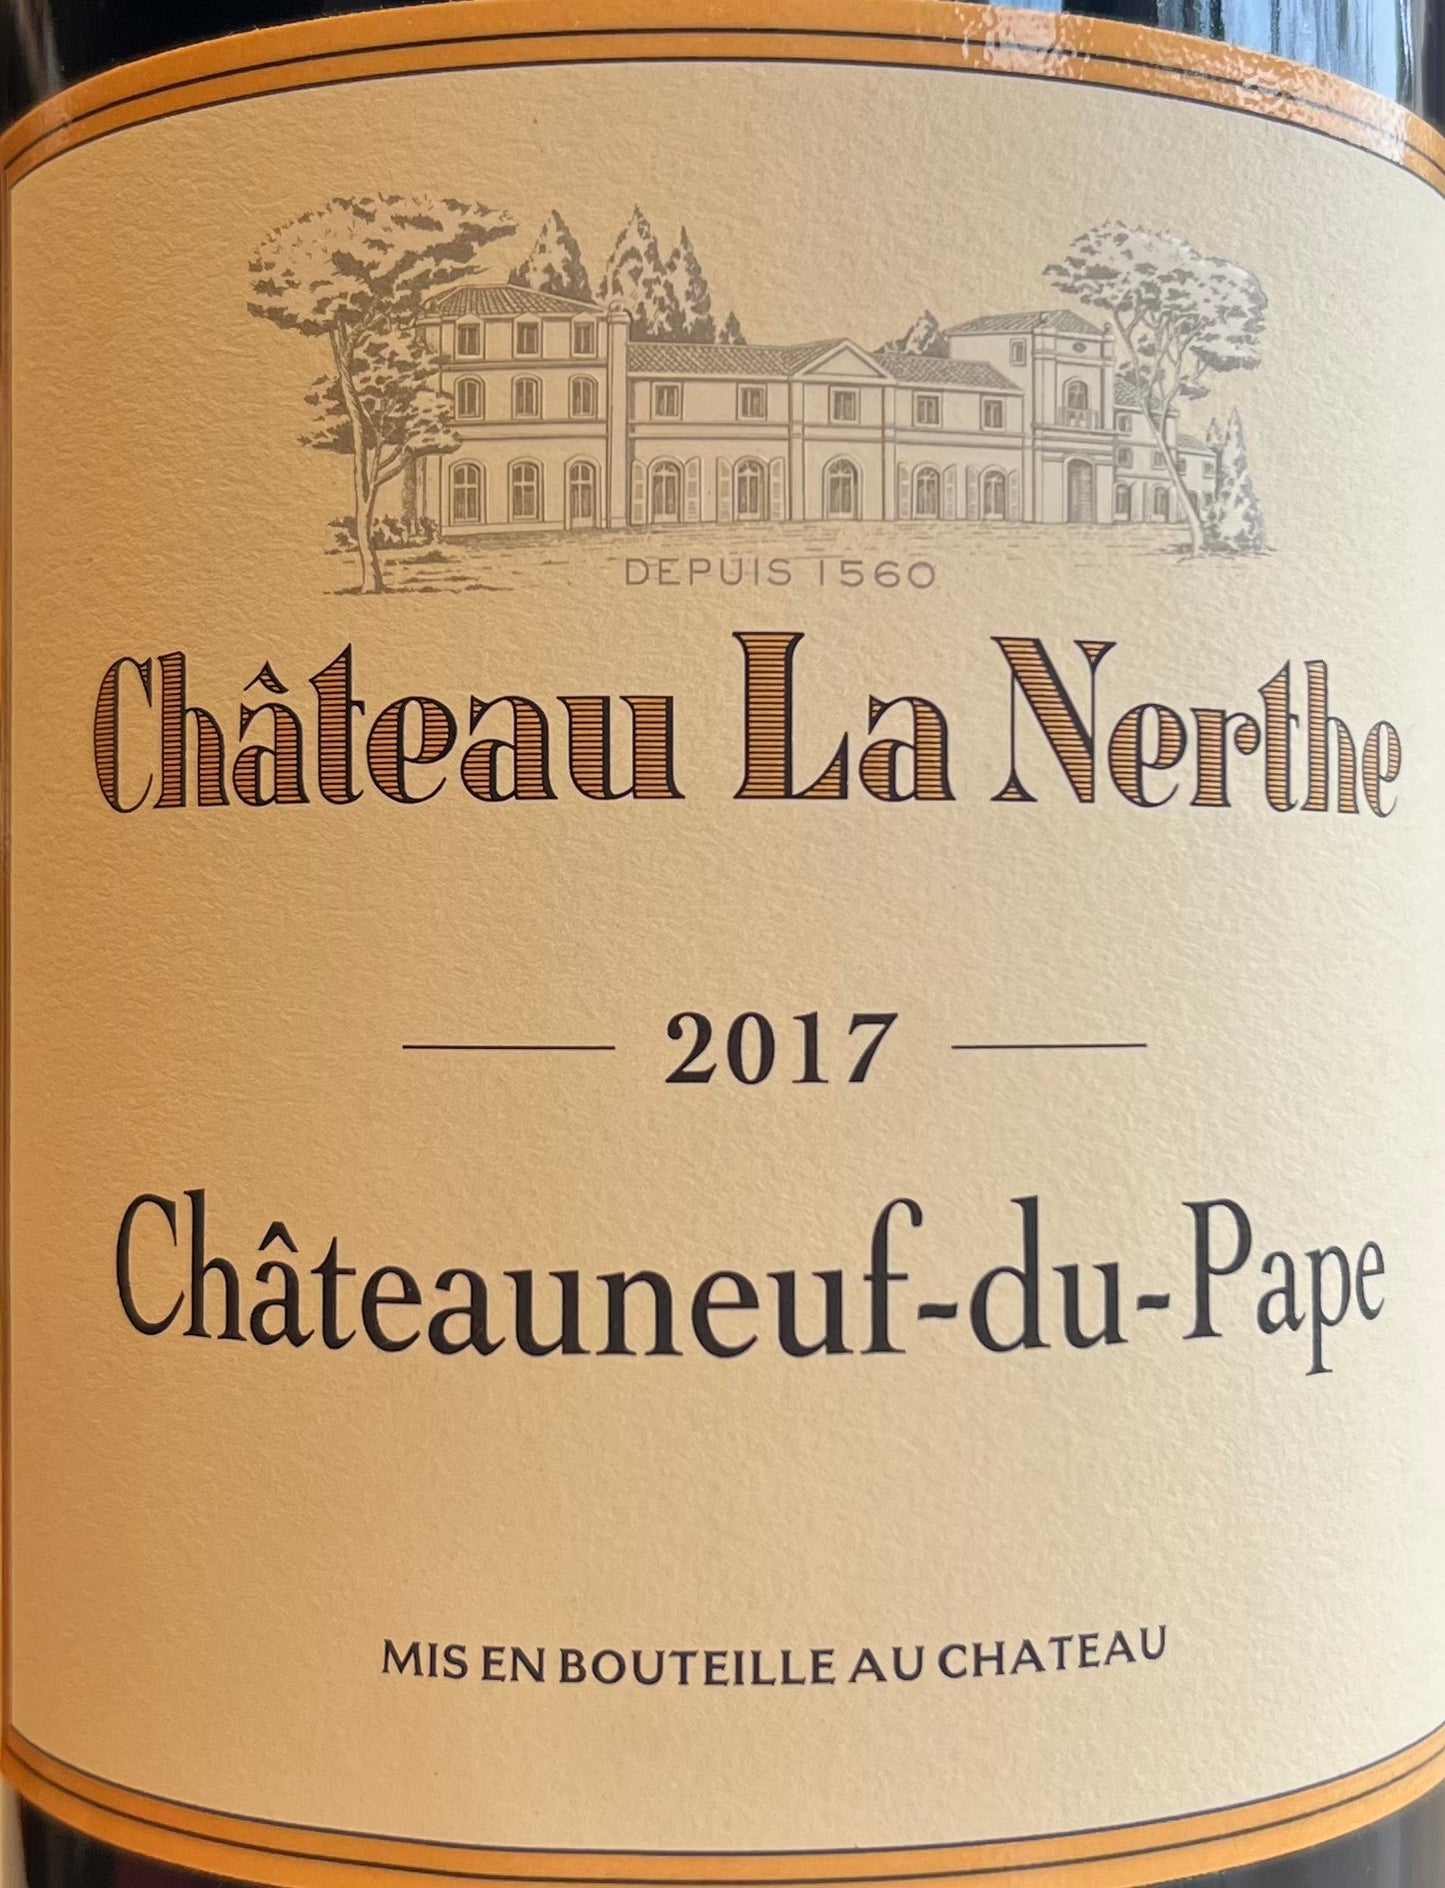 Chateau Le Nerthe - Chateauneuf-du-Pape - 2017 - 3L